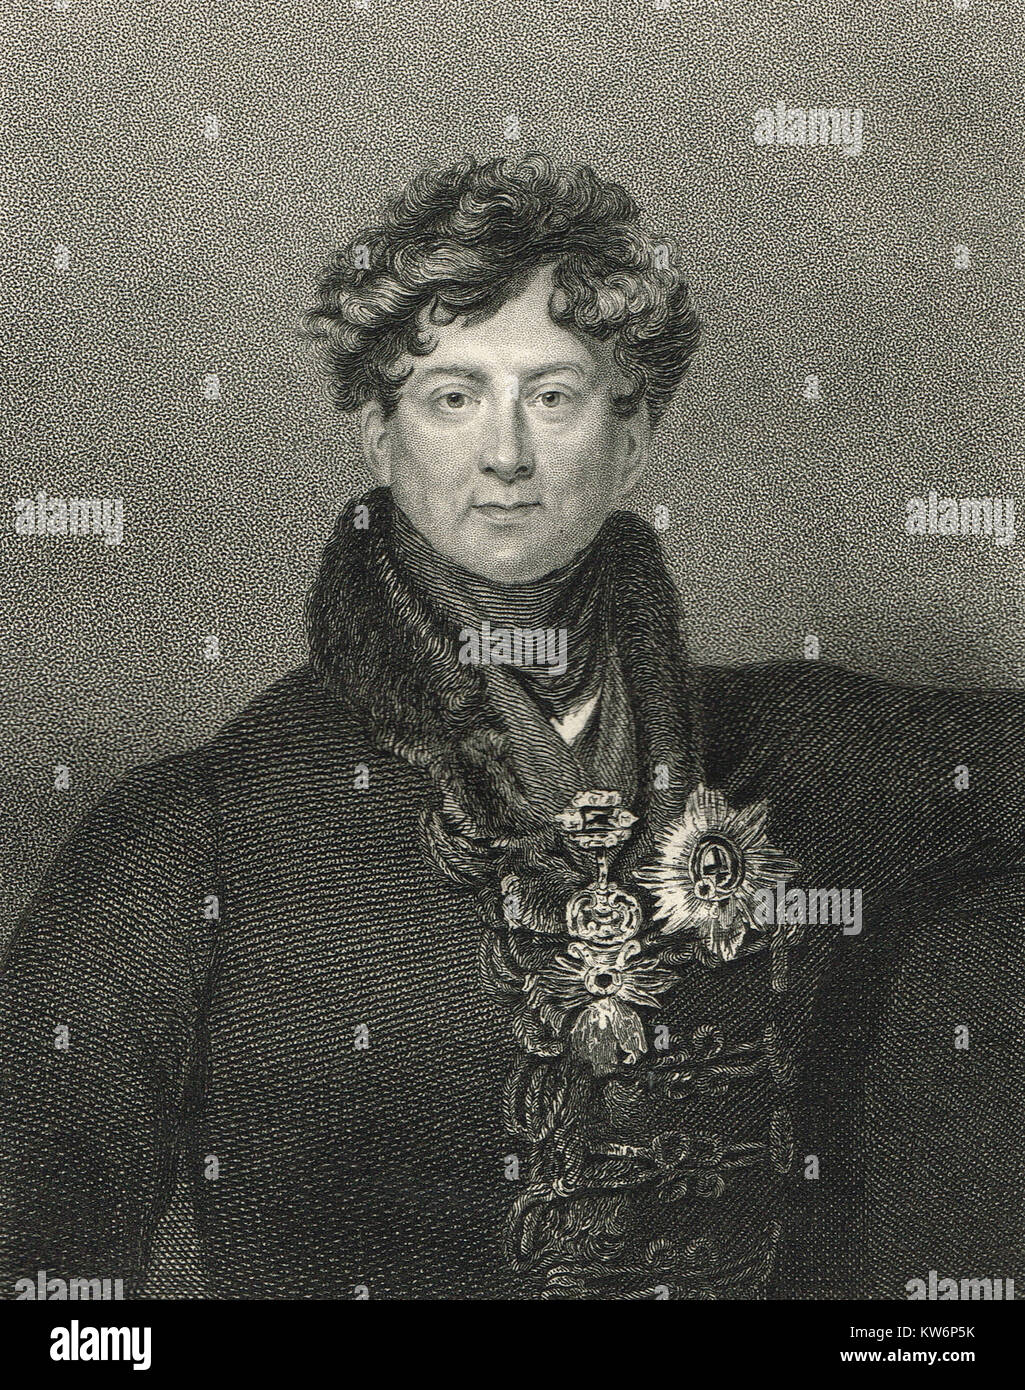 El rey Jorge IV del Reino Unido, 1762-1830, reinó 1820-1830 Foto de stock